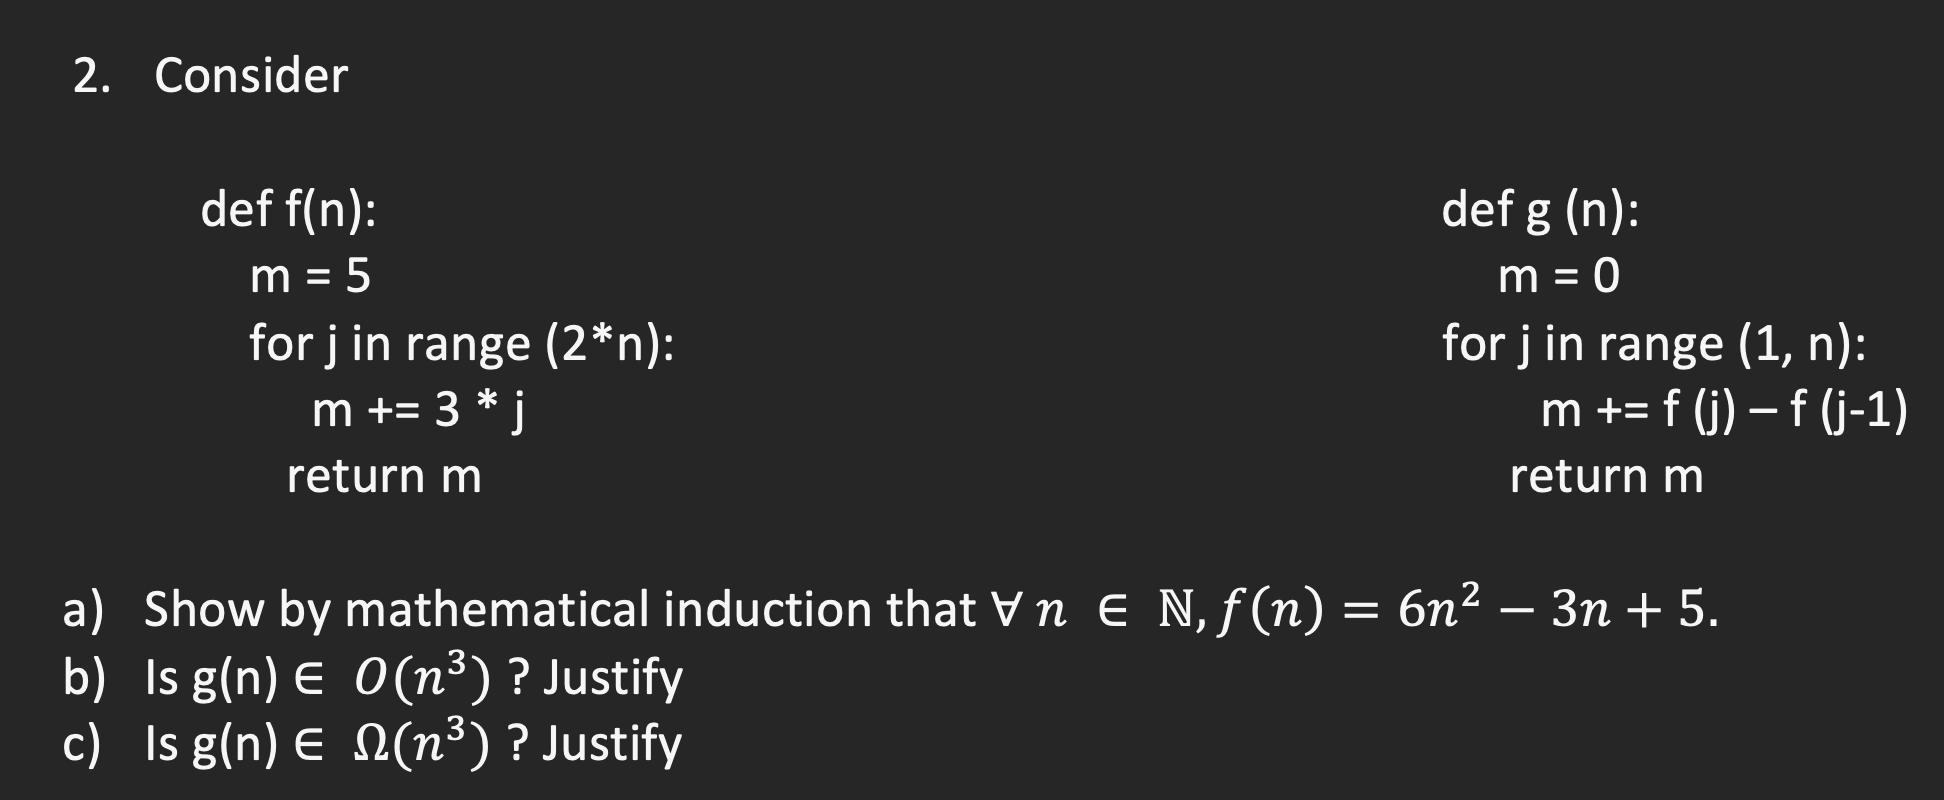 2. Consider def f(n): m = 5 for j in range (2*n): m += 3 * j return m def g (n): m = 0 for j in range (1, n):